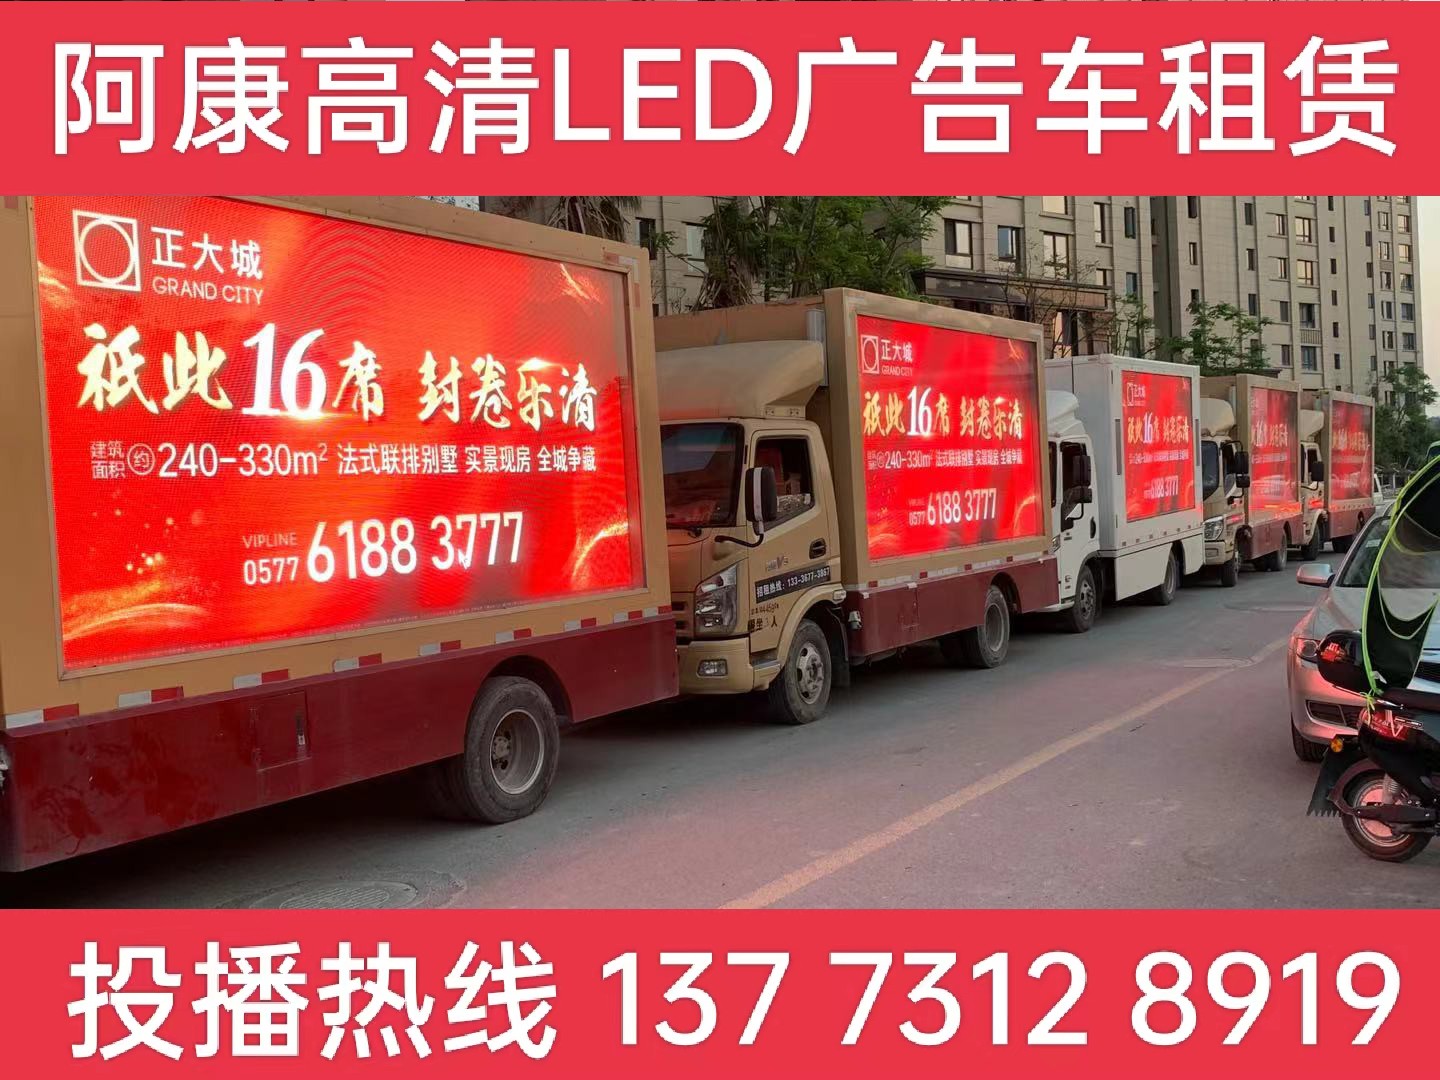 江宁区LED广告车出租